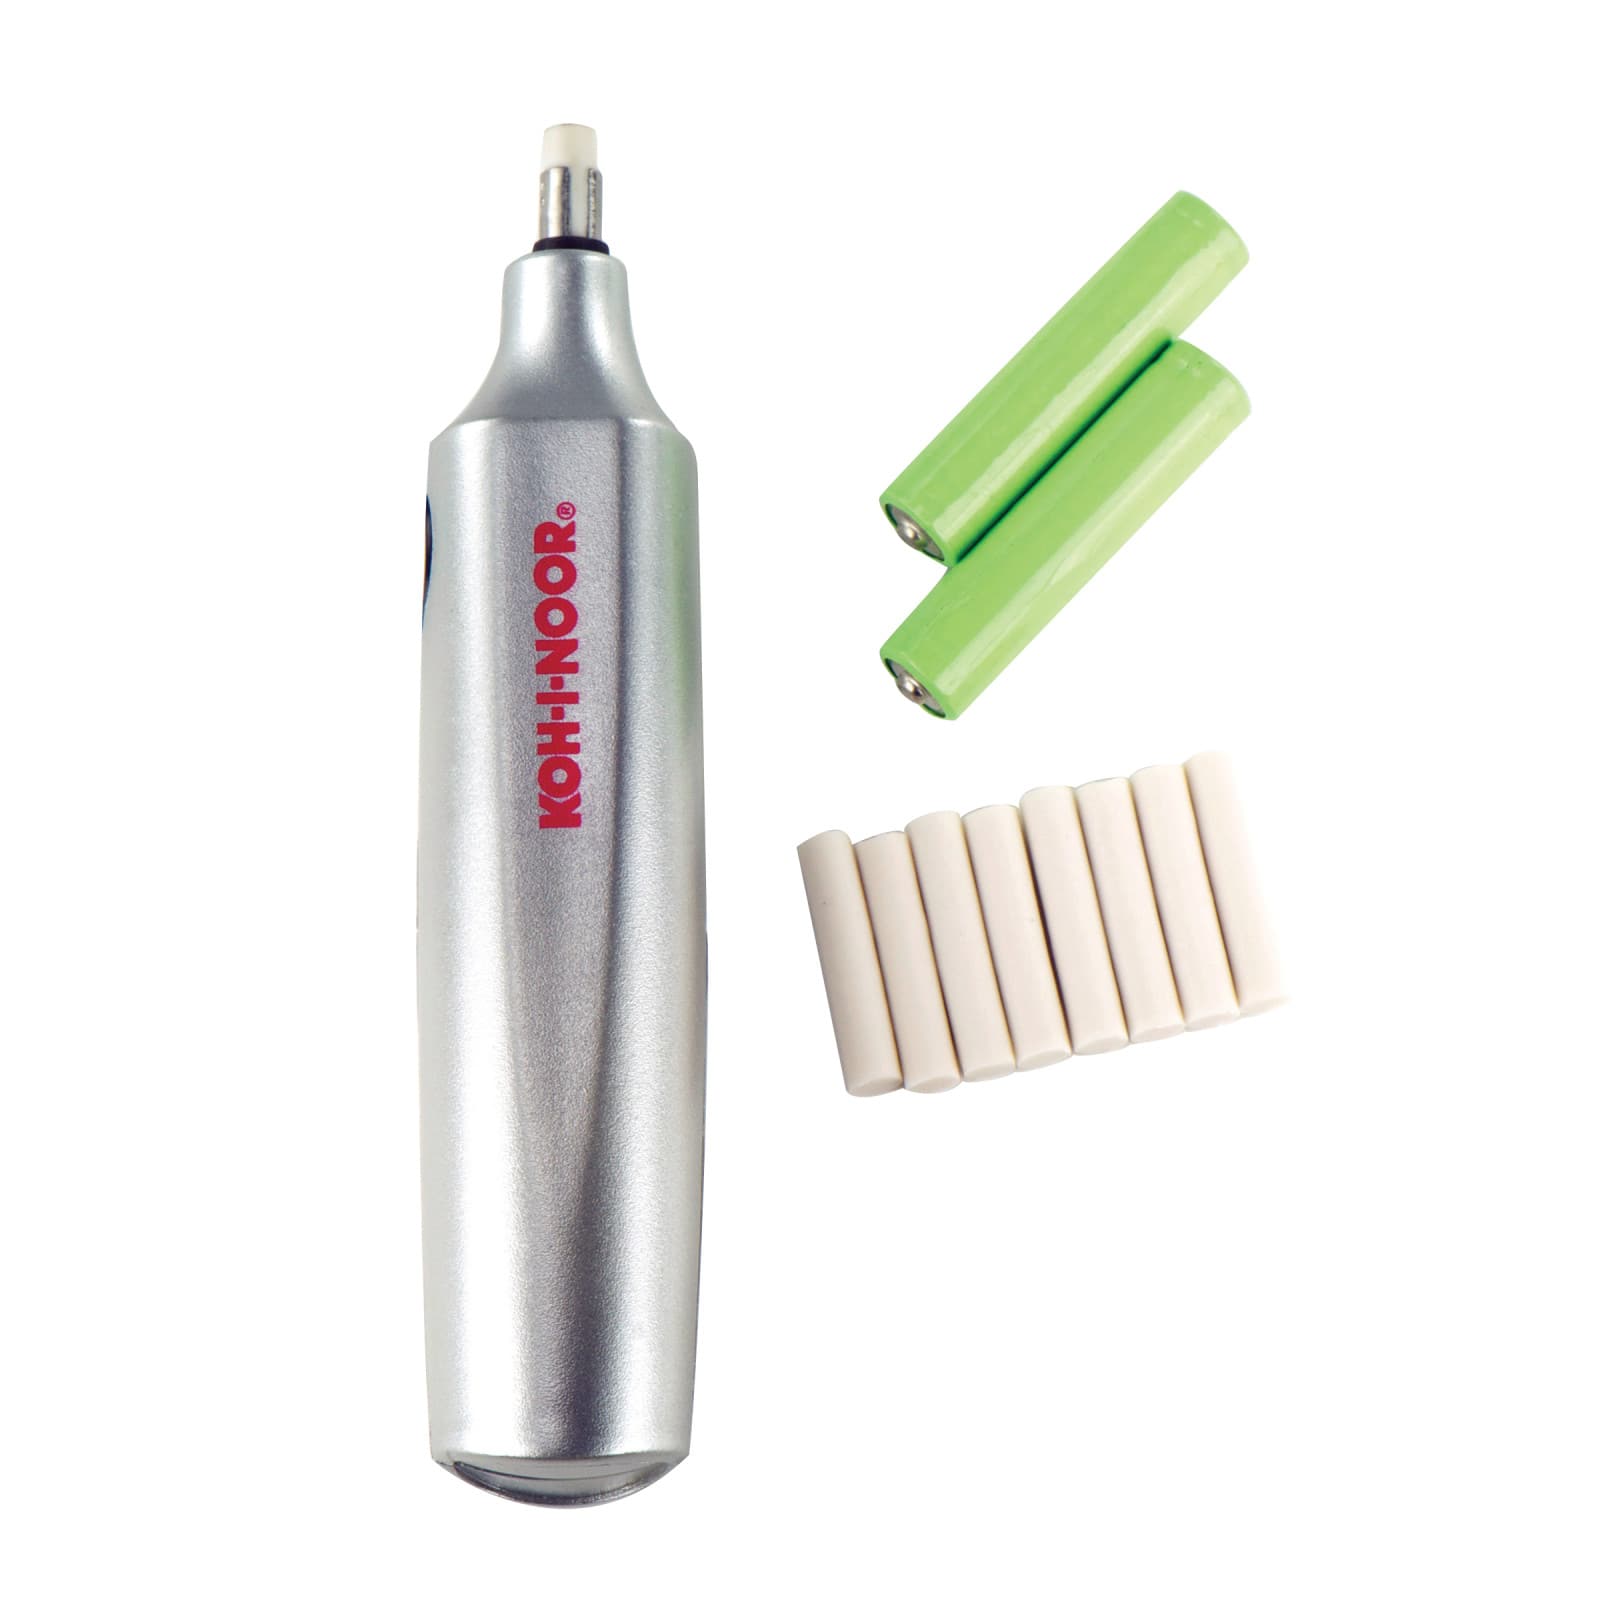 Koh-I-Noor Battery Operated Eraser